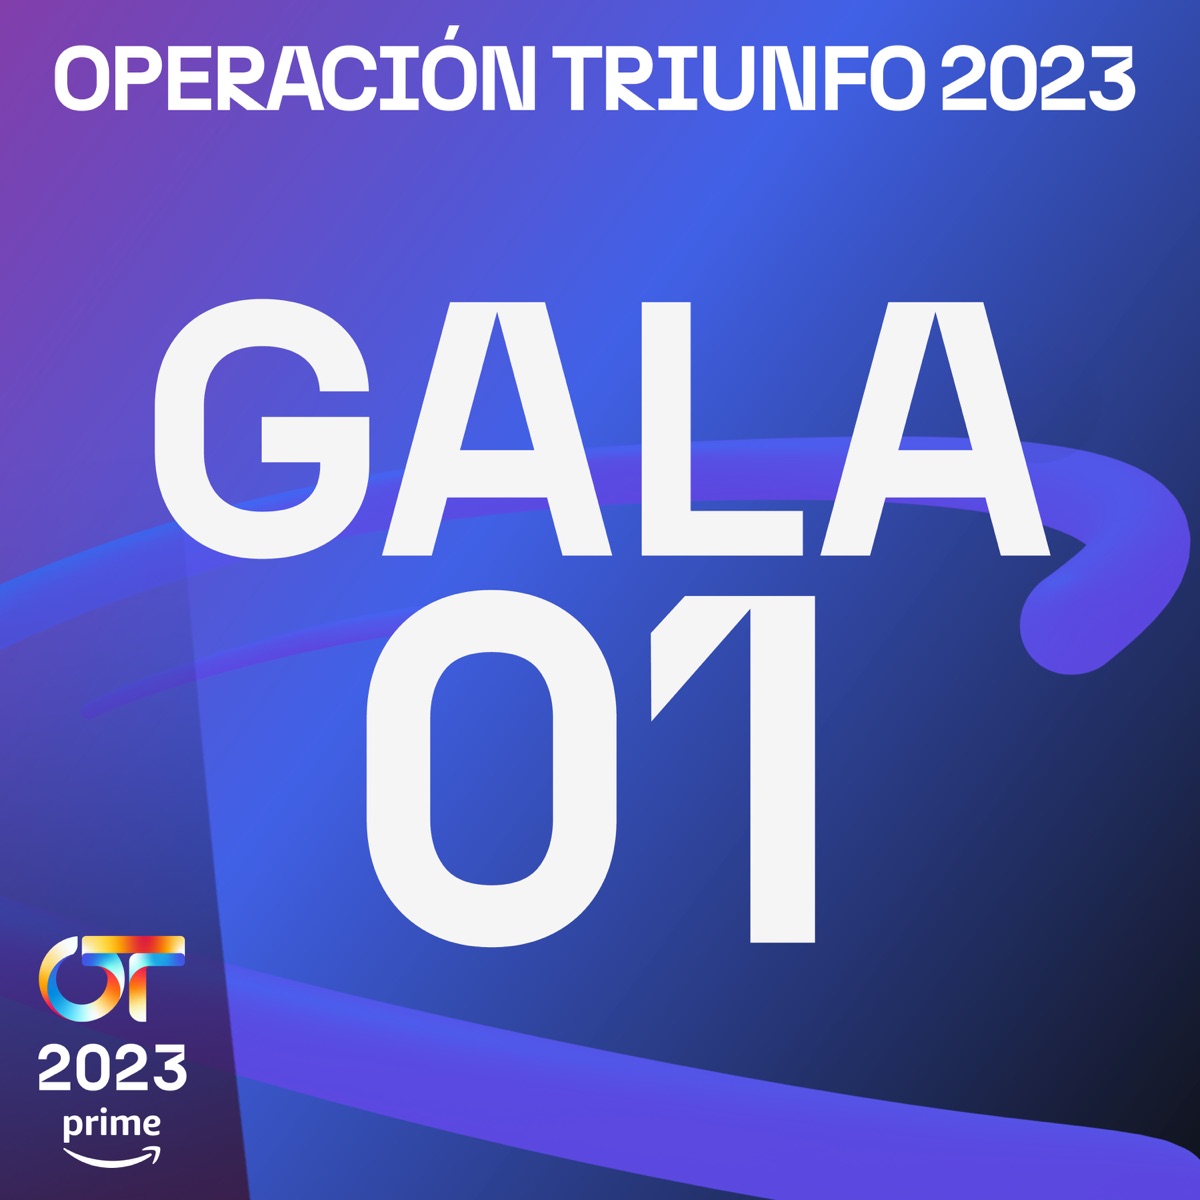 OT Gala 1 (Operación Triunfo 2023)” álbum de Varios Artistas en Apple Music